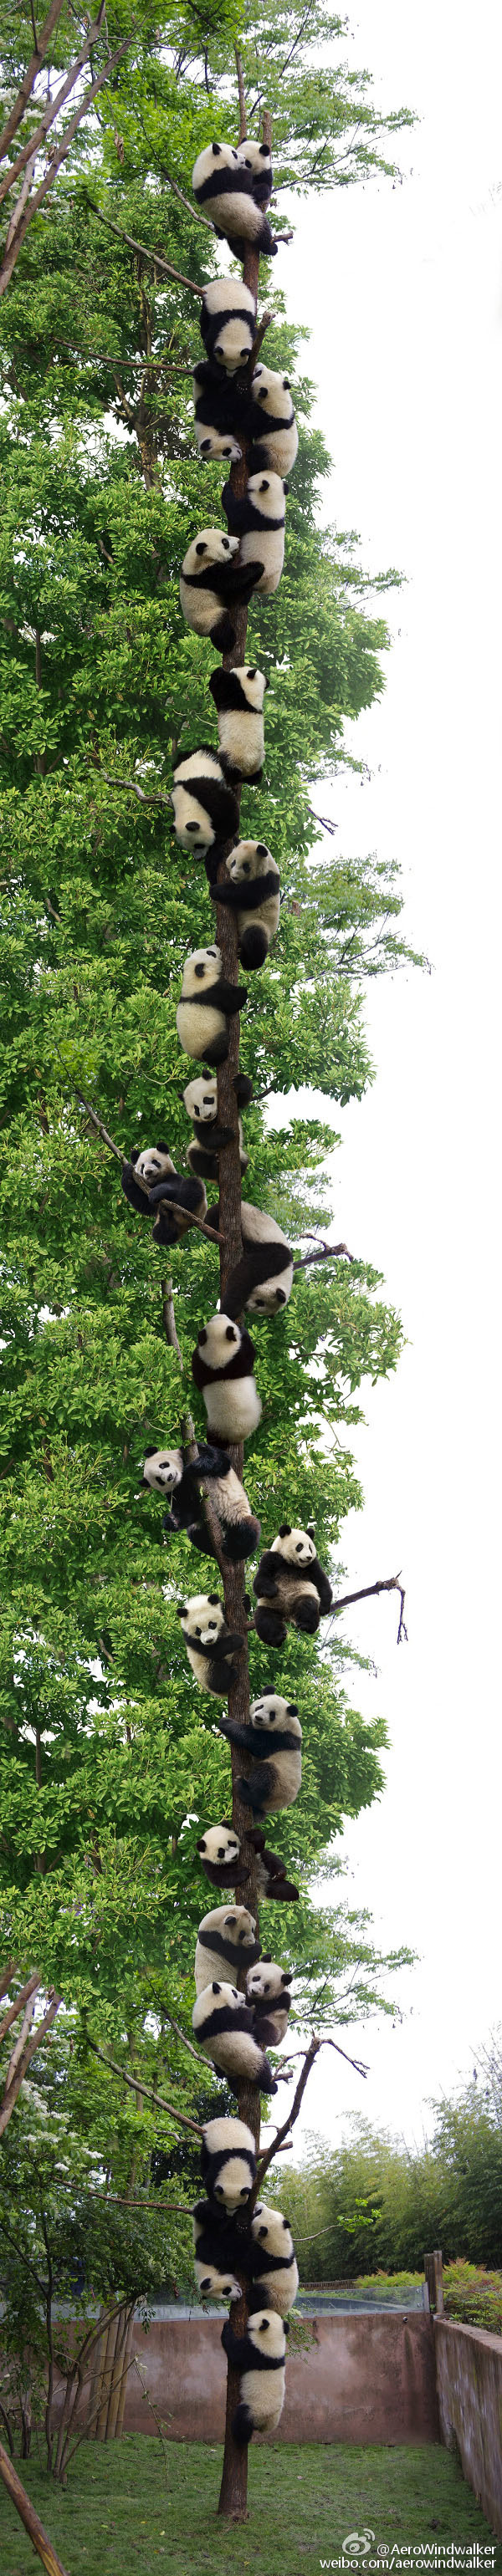 OMG Panda Tree